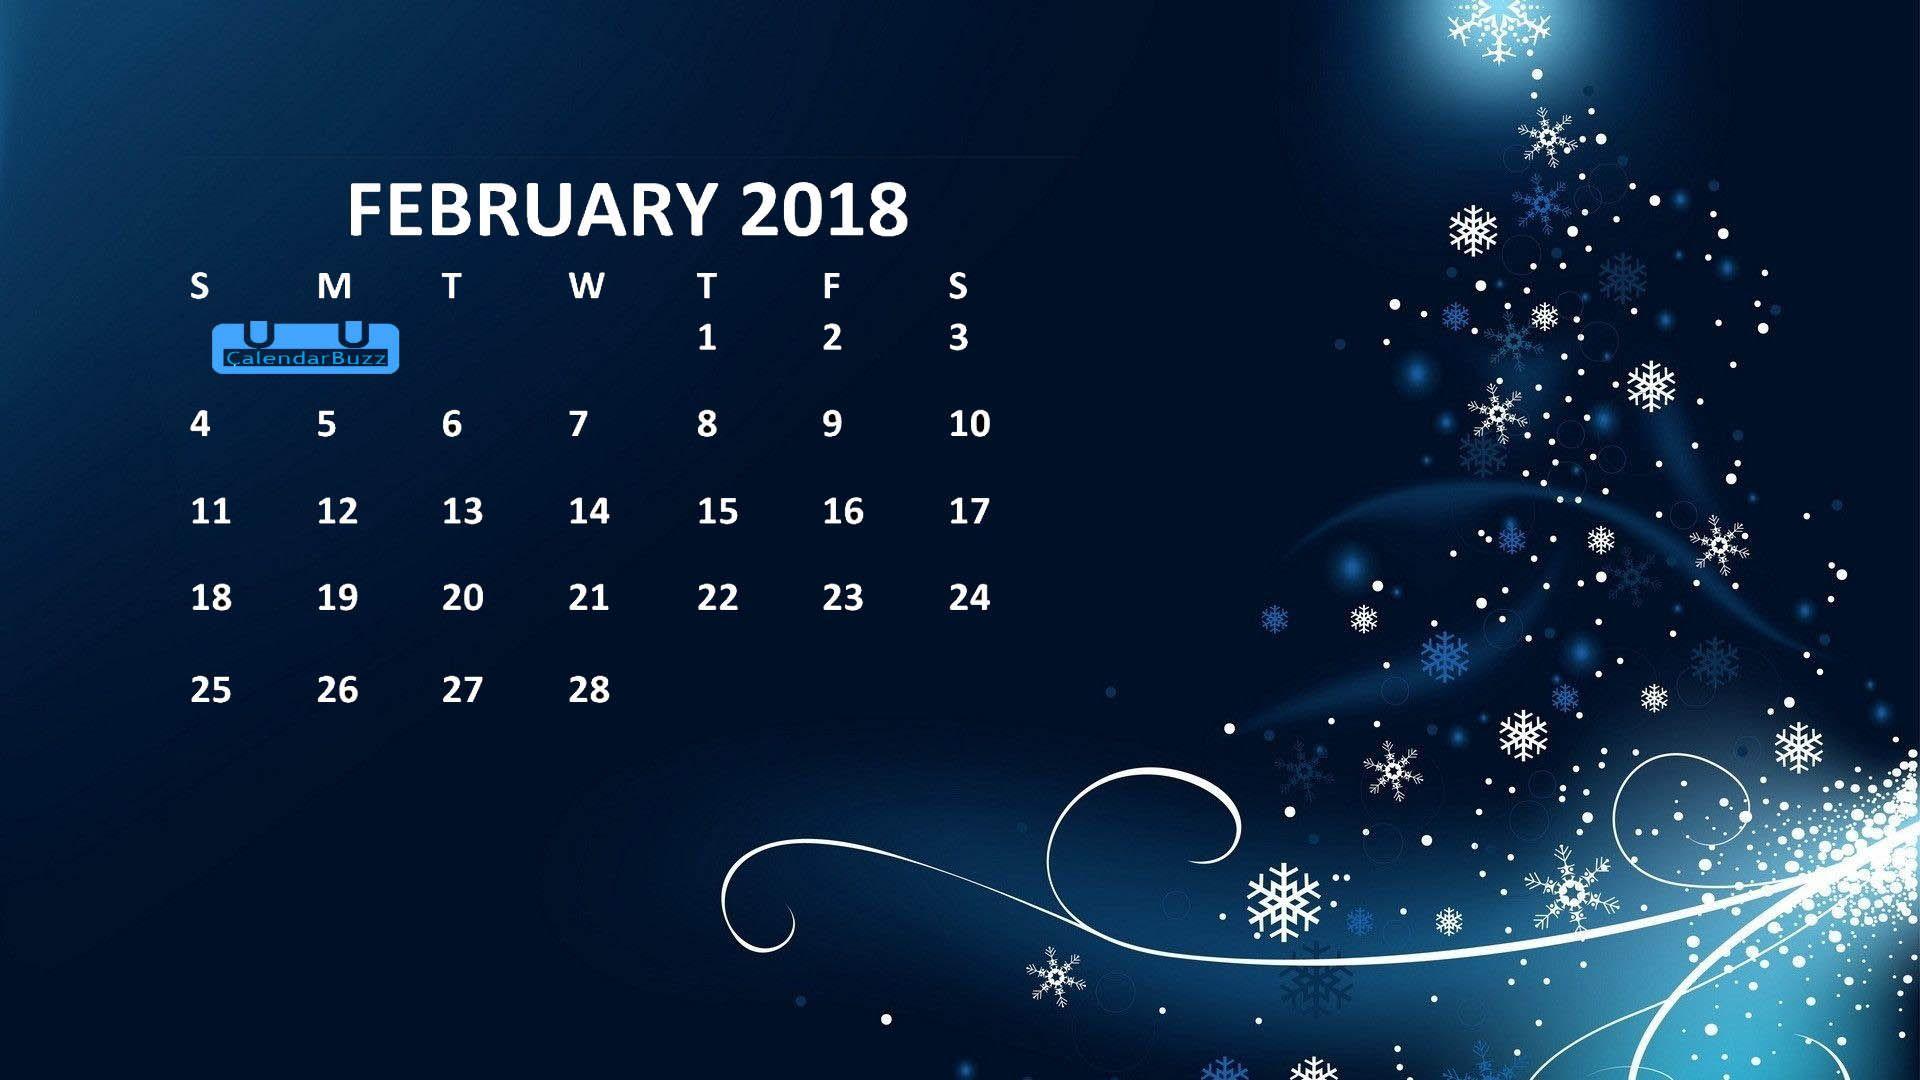 February 2018 Calendar HD Wallpaper Calendar Wallpaper